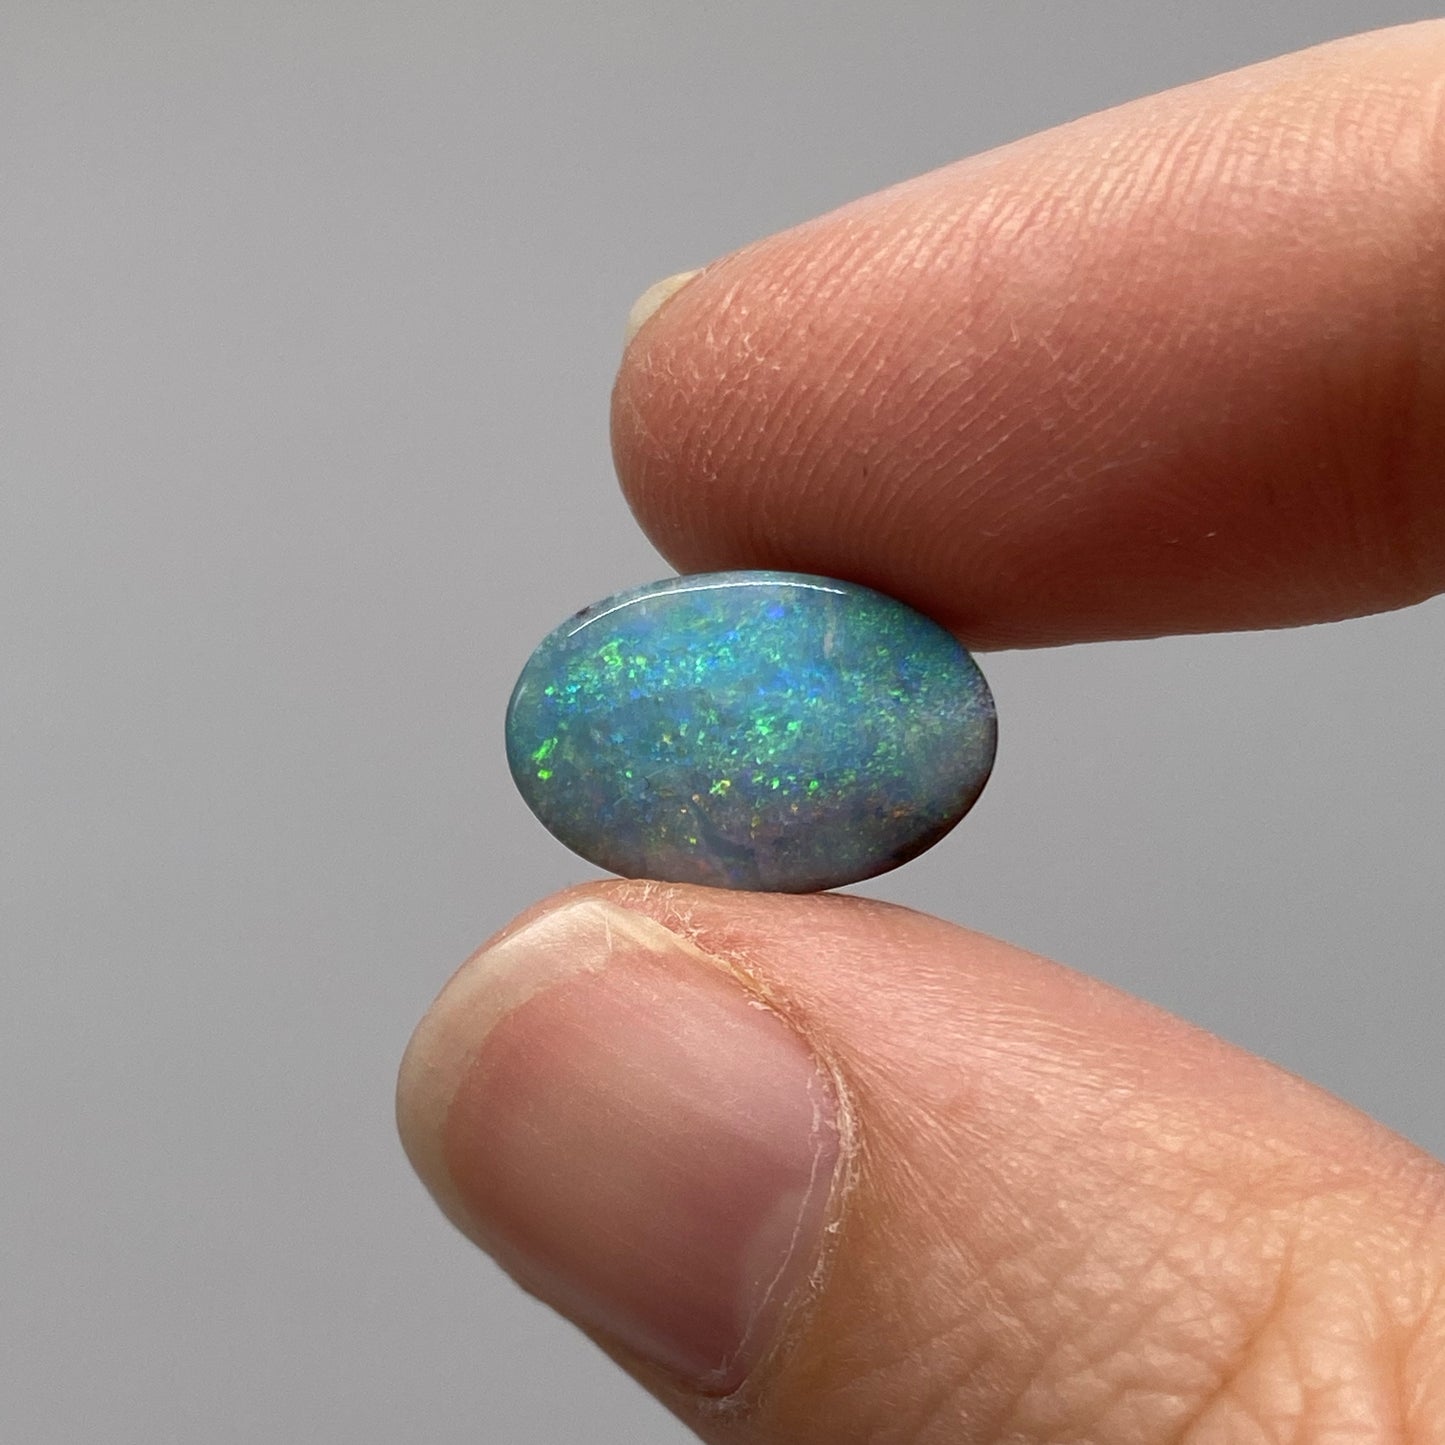 3.70 Ct oval boulder opal